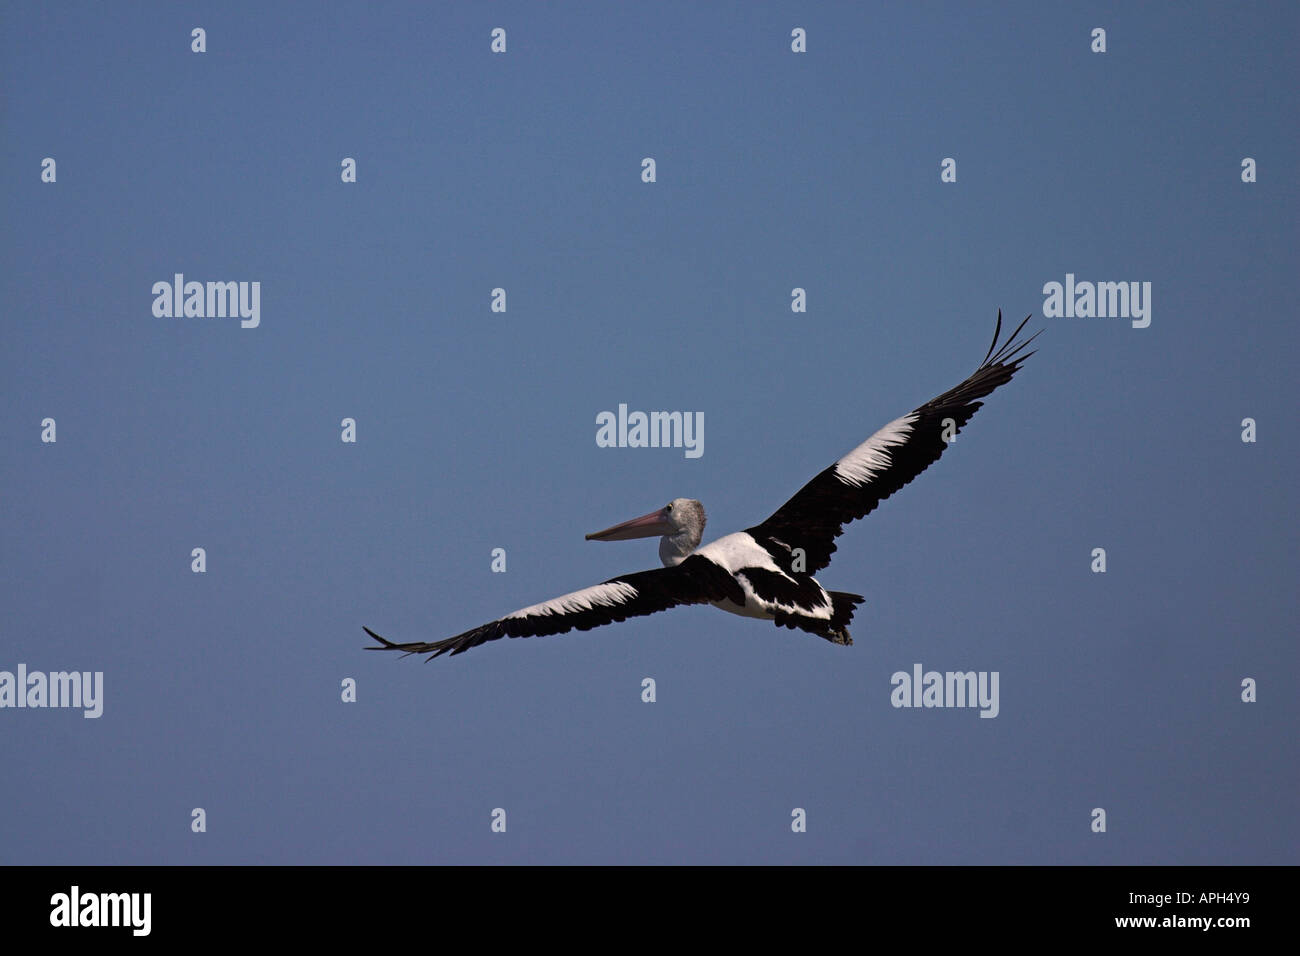 australian pelican, pelecanus conspicillatus, in flight Stock Photo